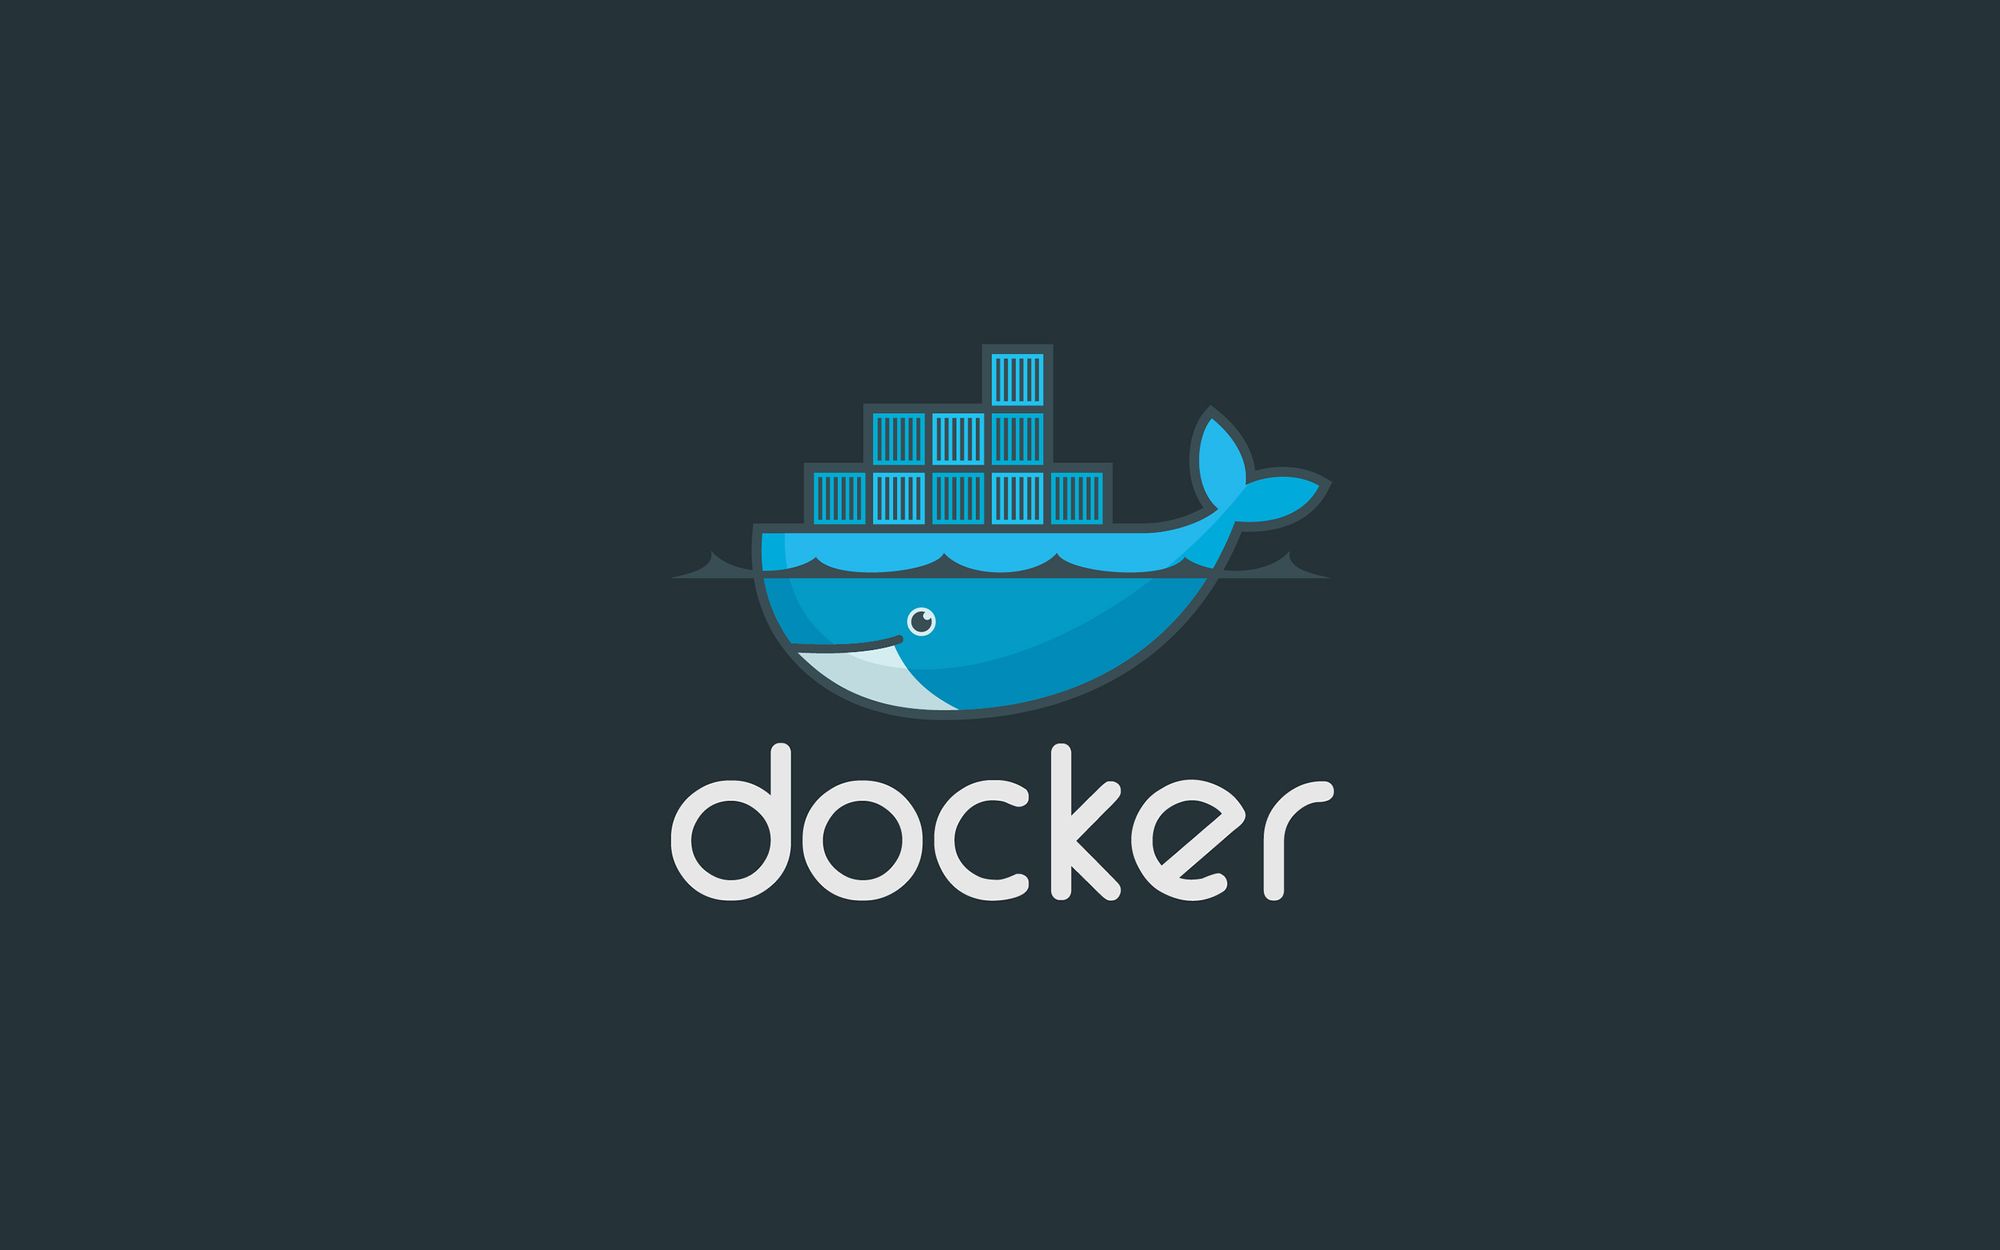 รู้จักกับ Docker ที่ทำให้ชีวิตง่ายขึ้น